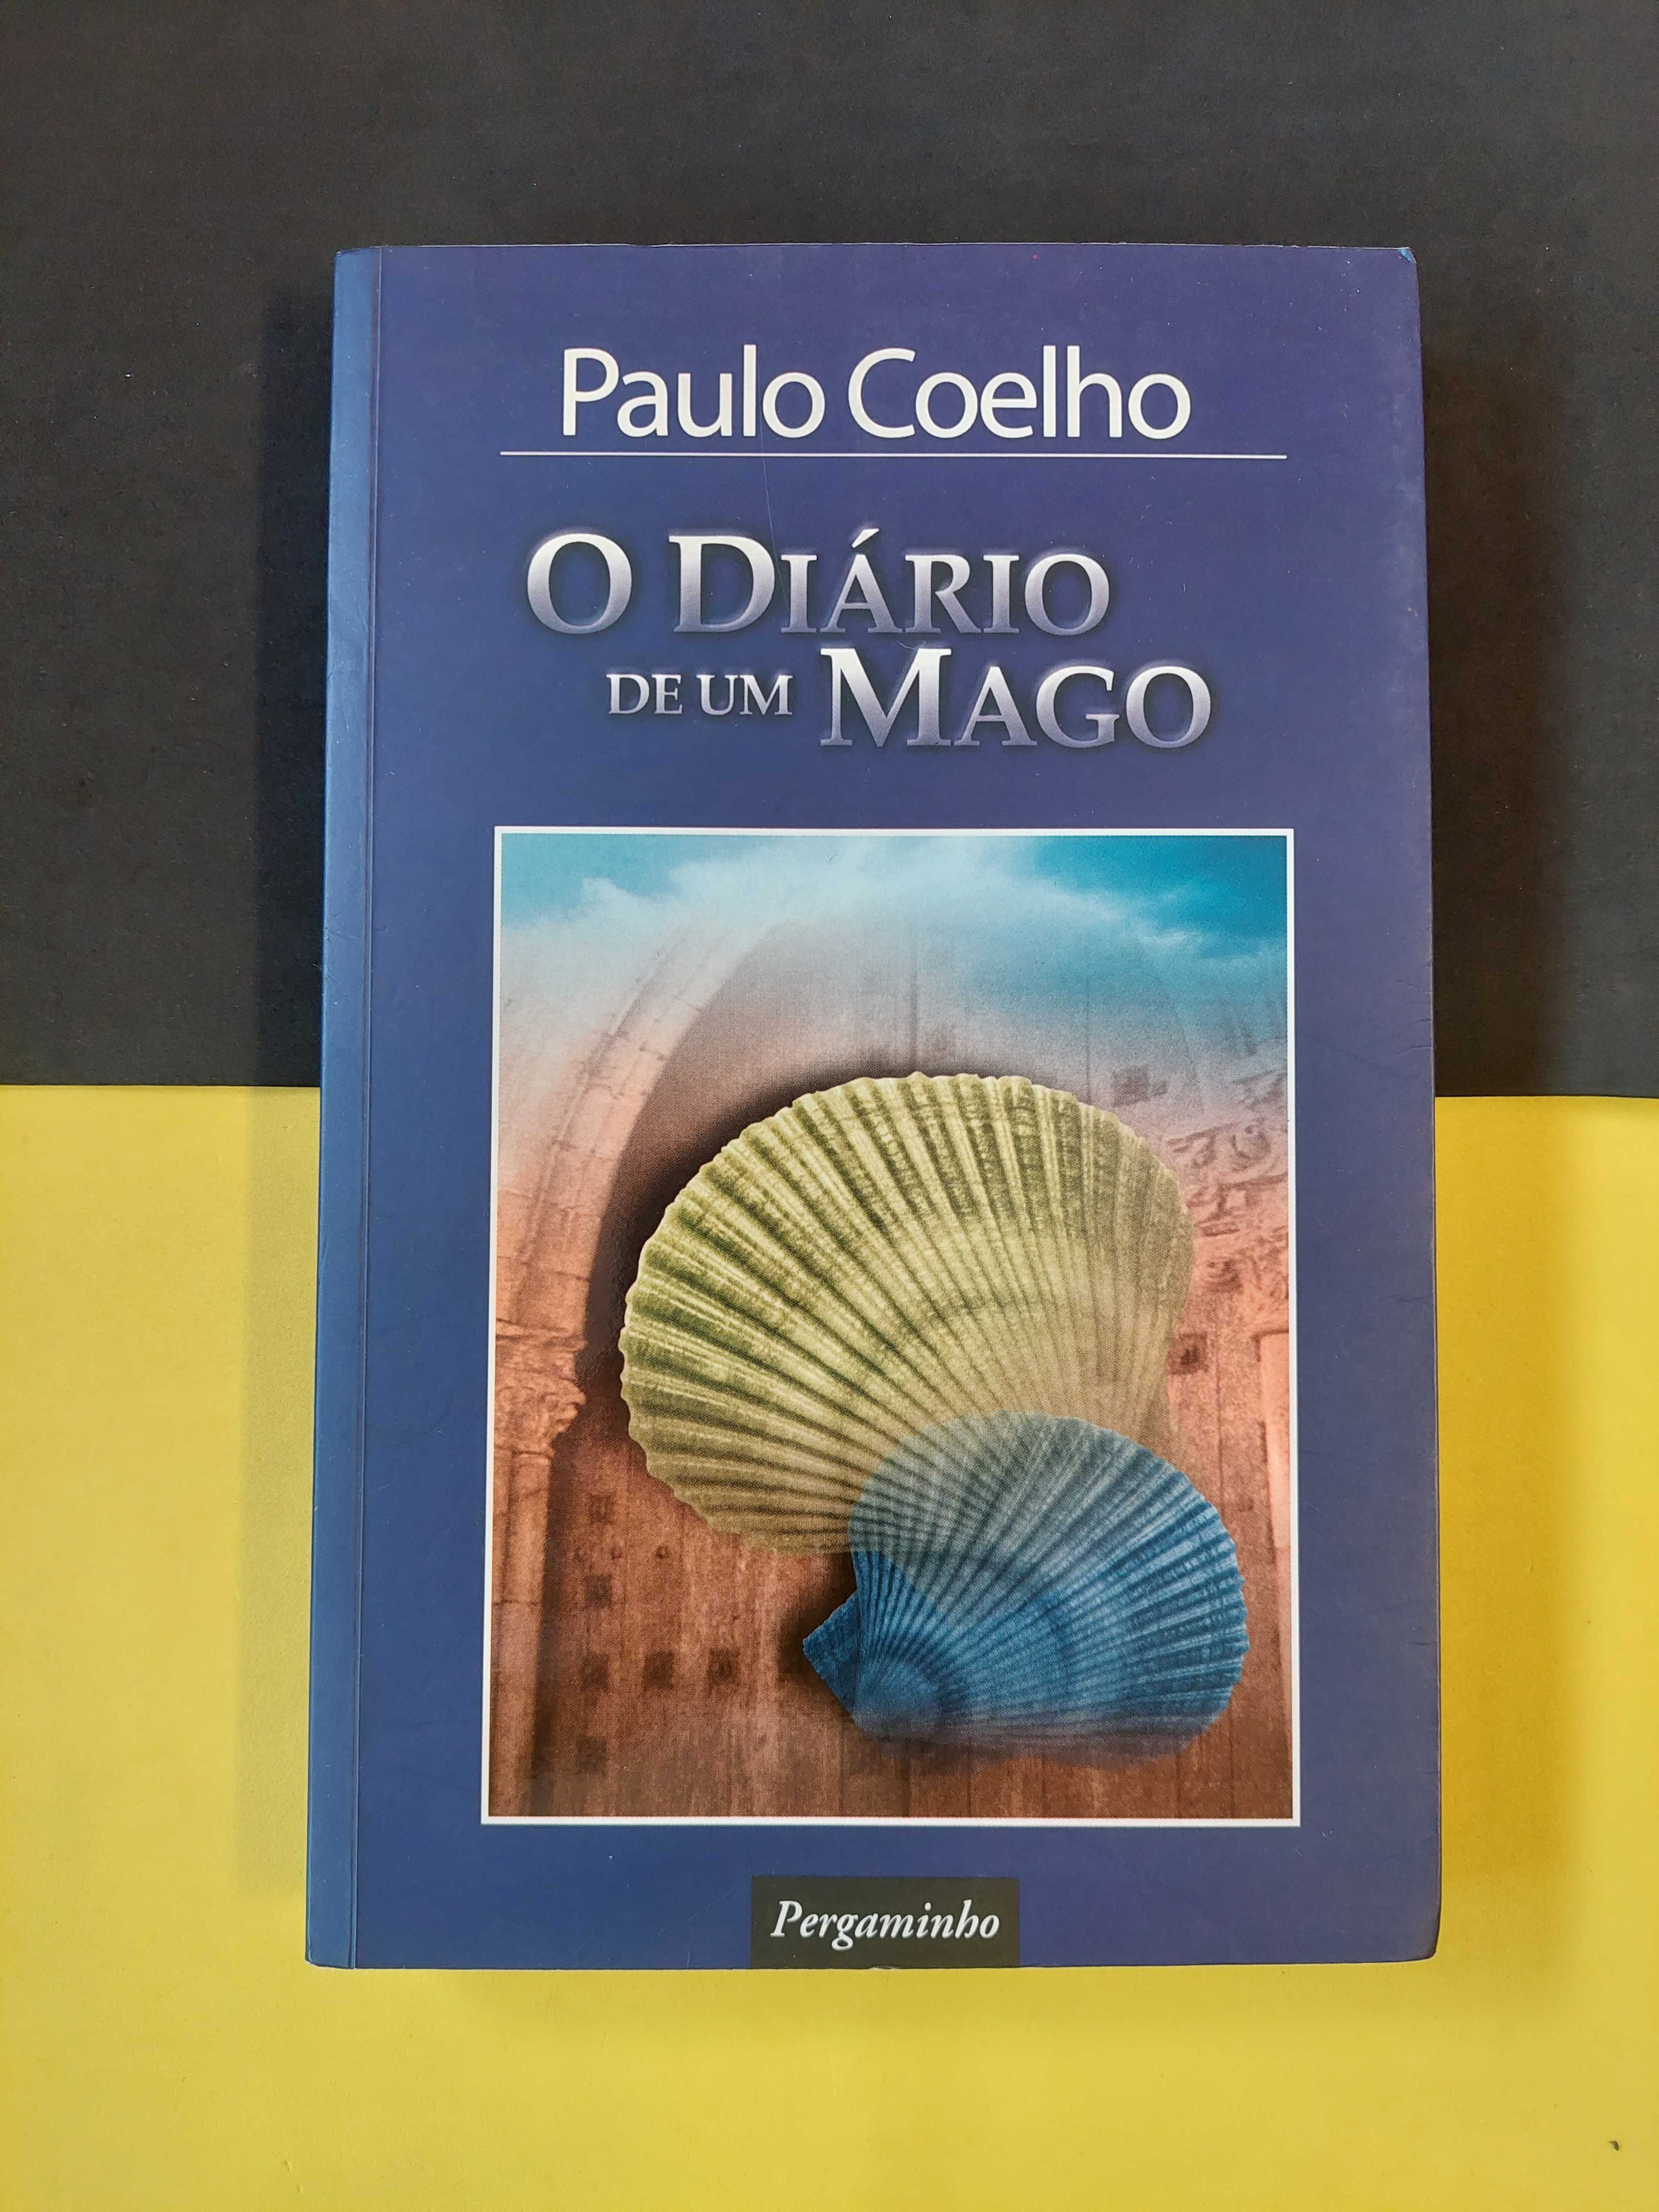 Paulo Coelho - O diário de um mago